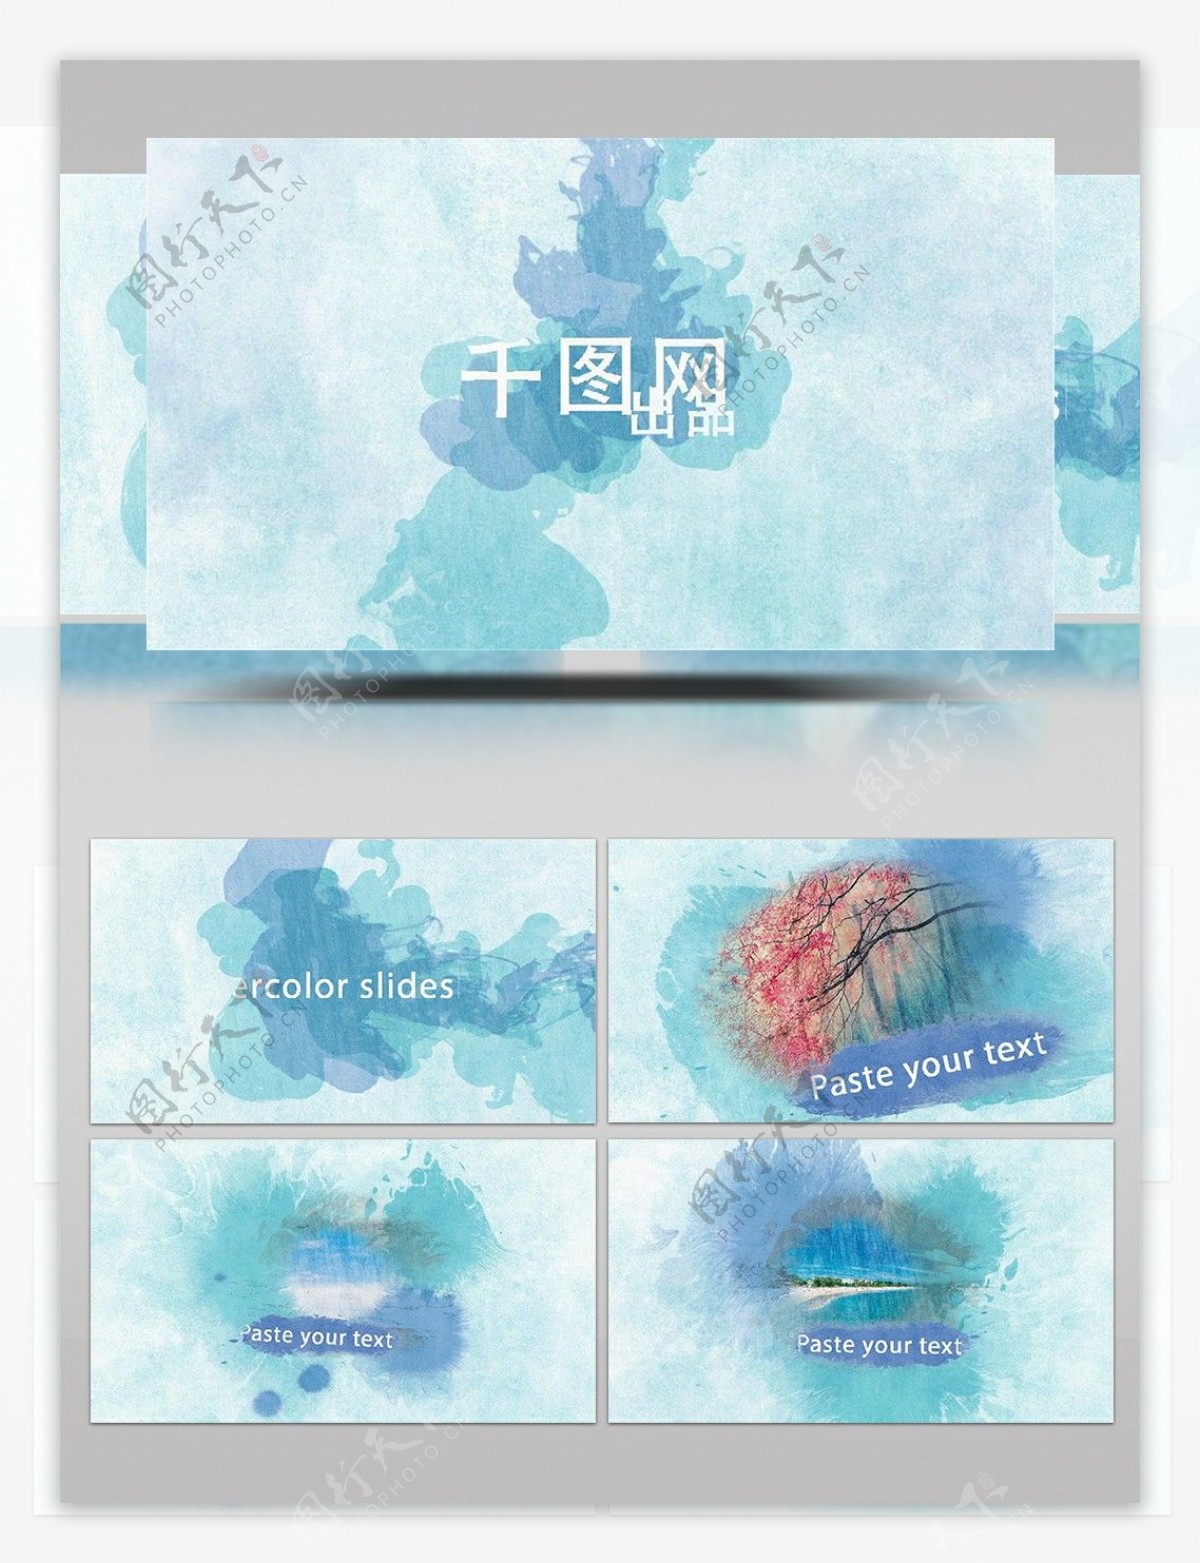 美轮美奂水彩中国风图文展示ae模板